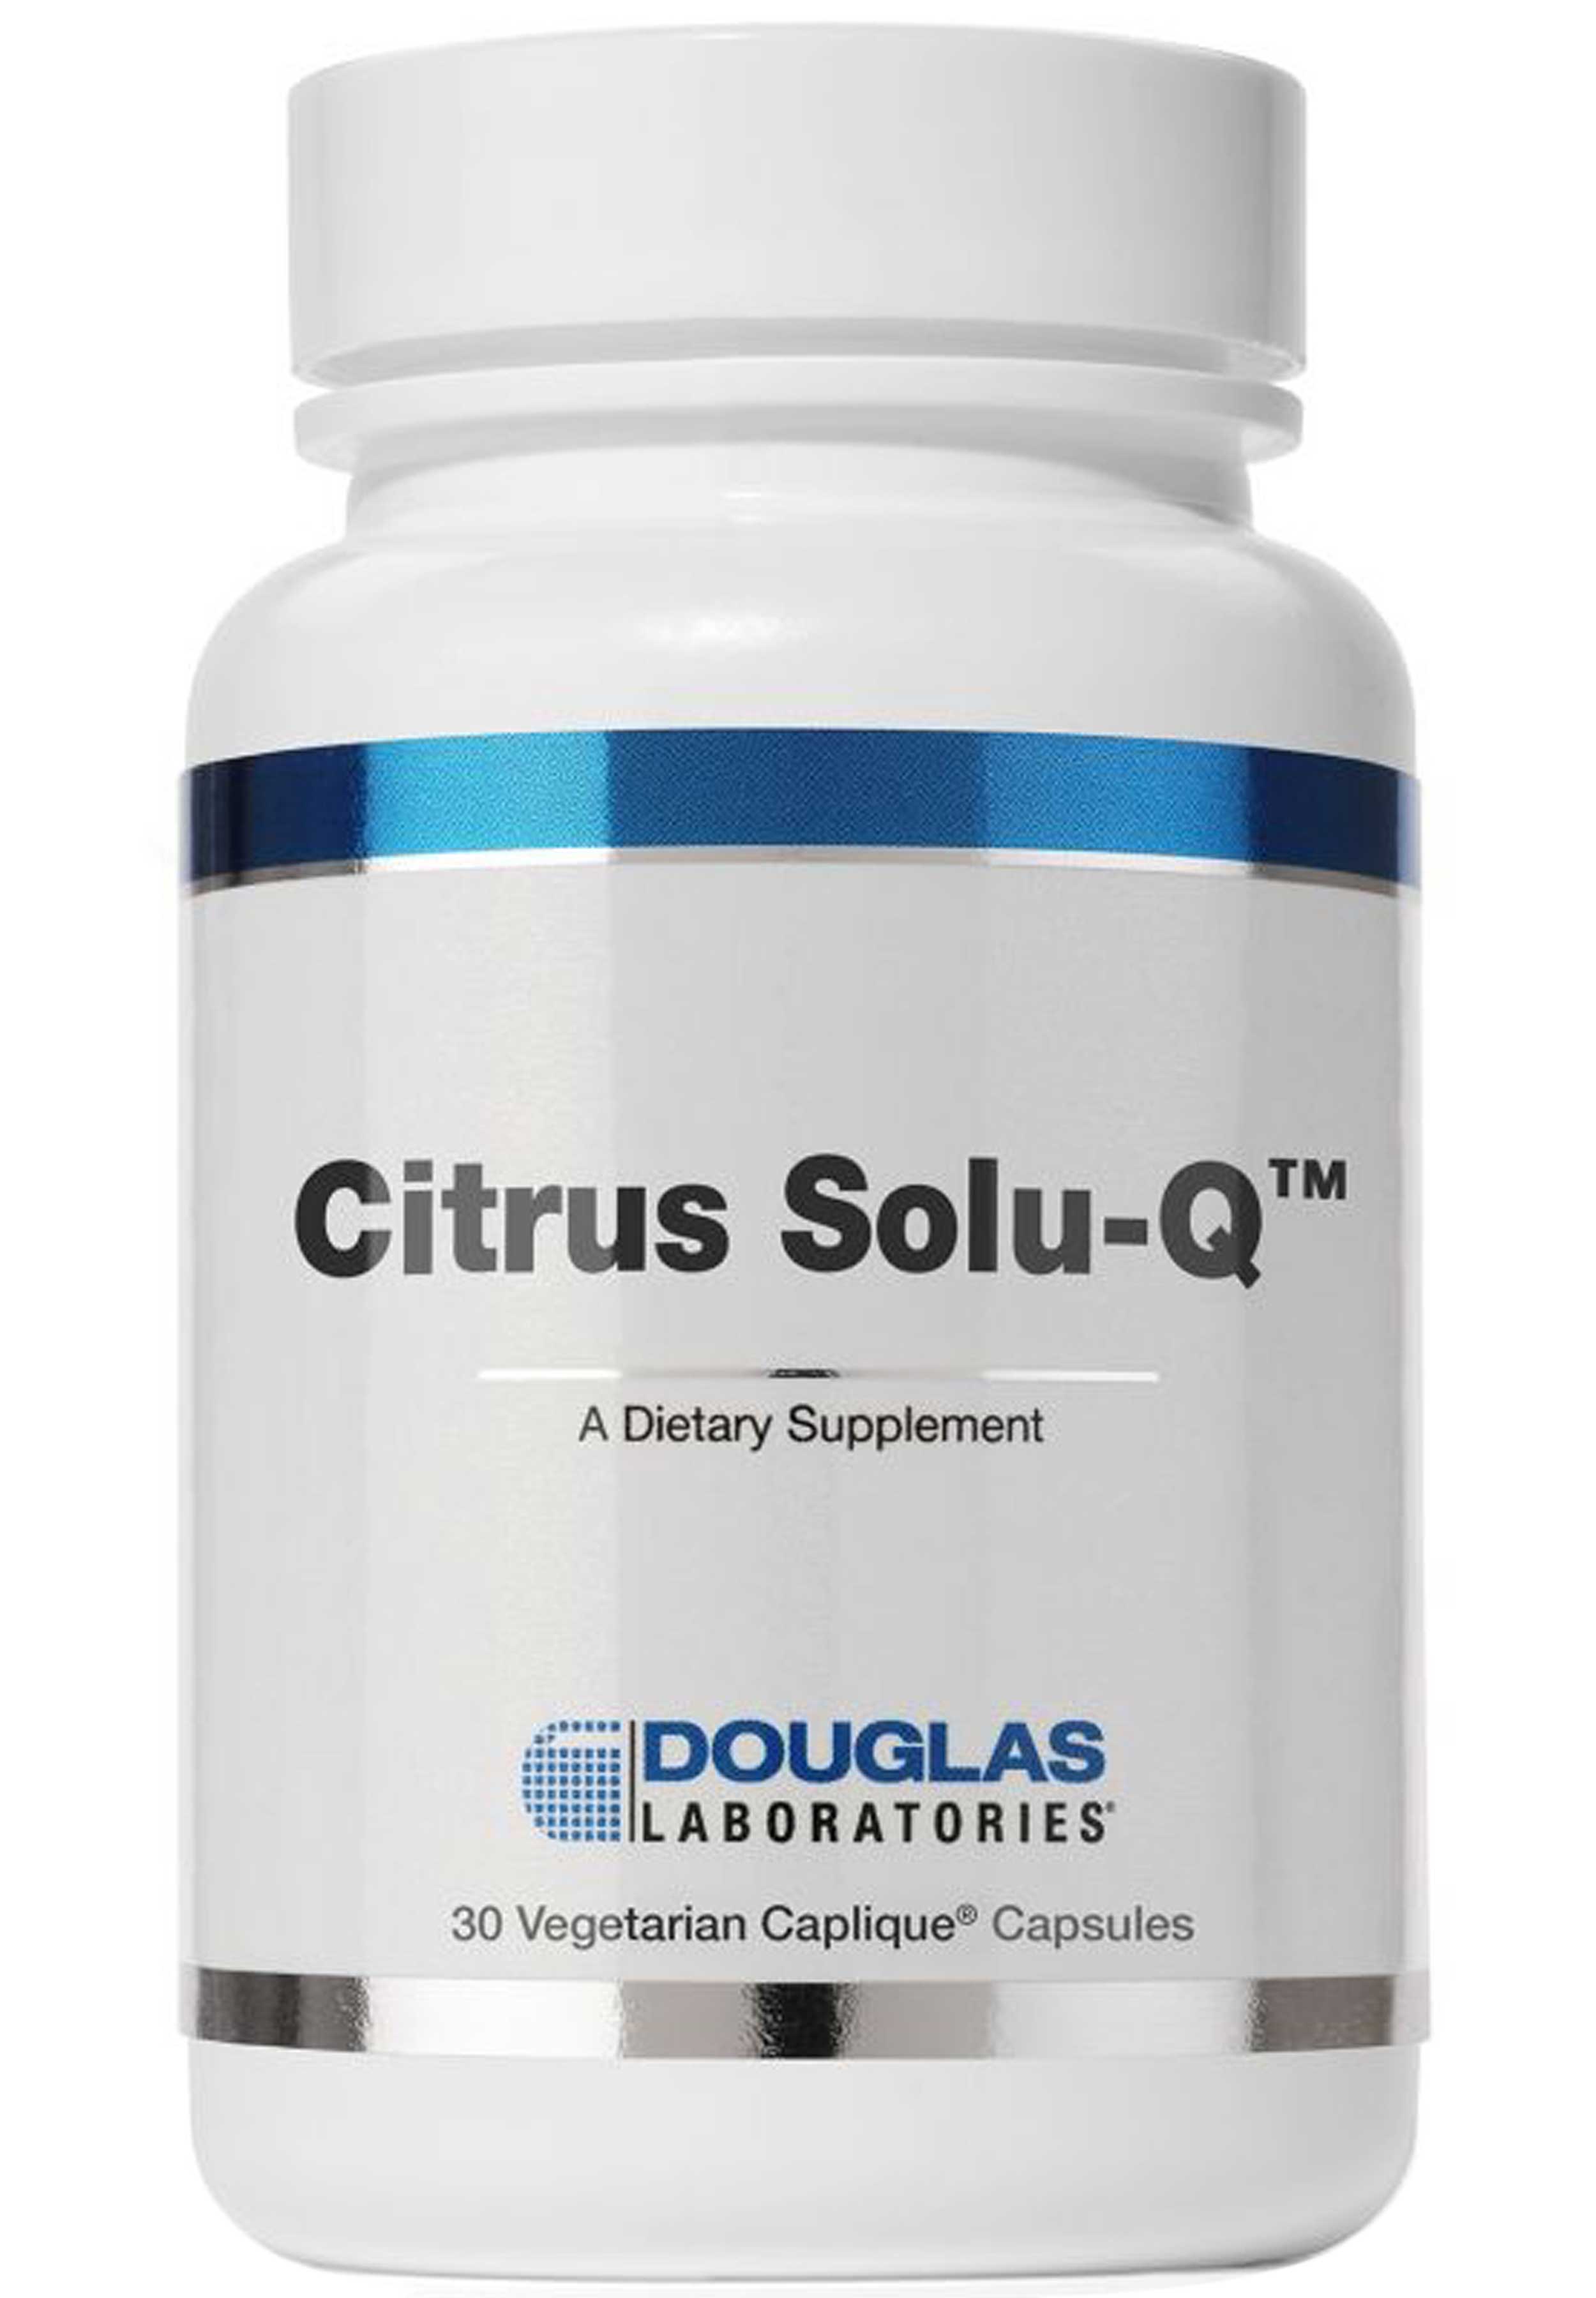 Douglas Laboratories Citrus Solu-Q